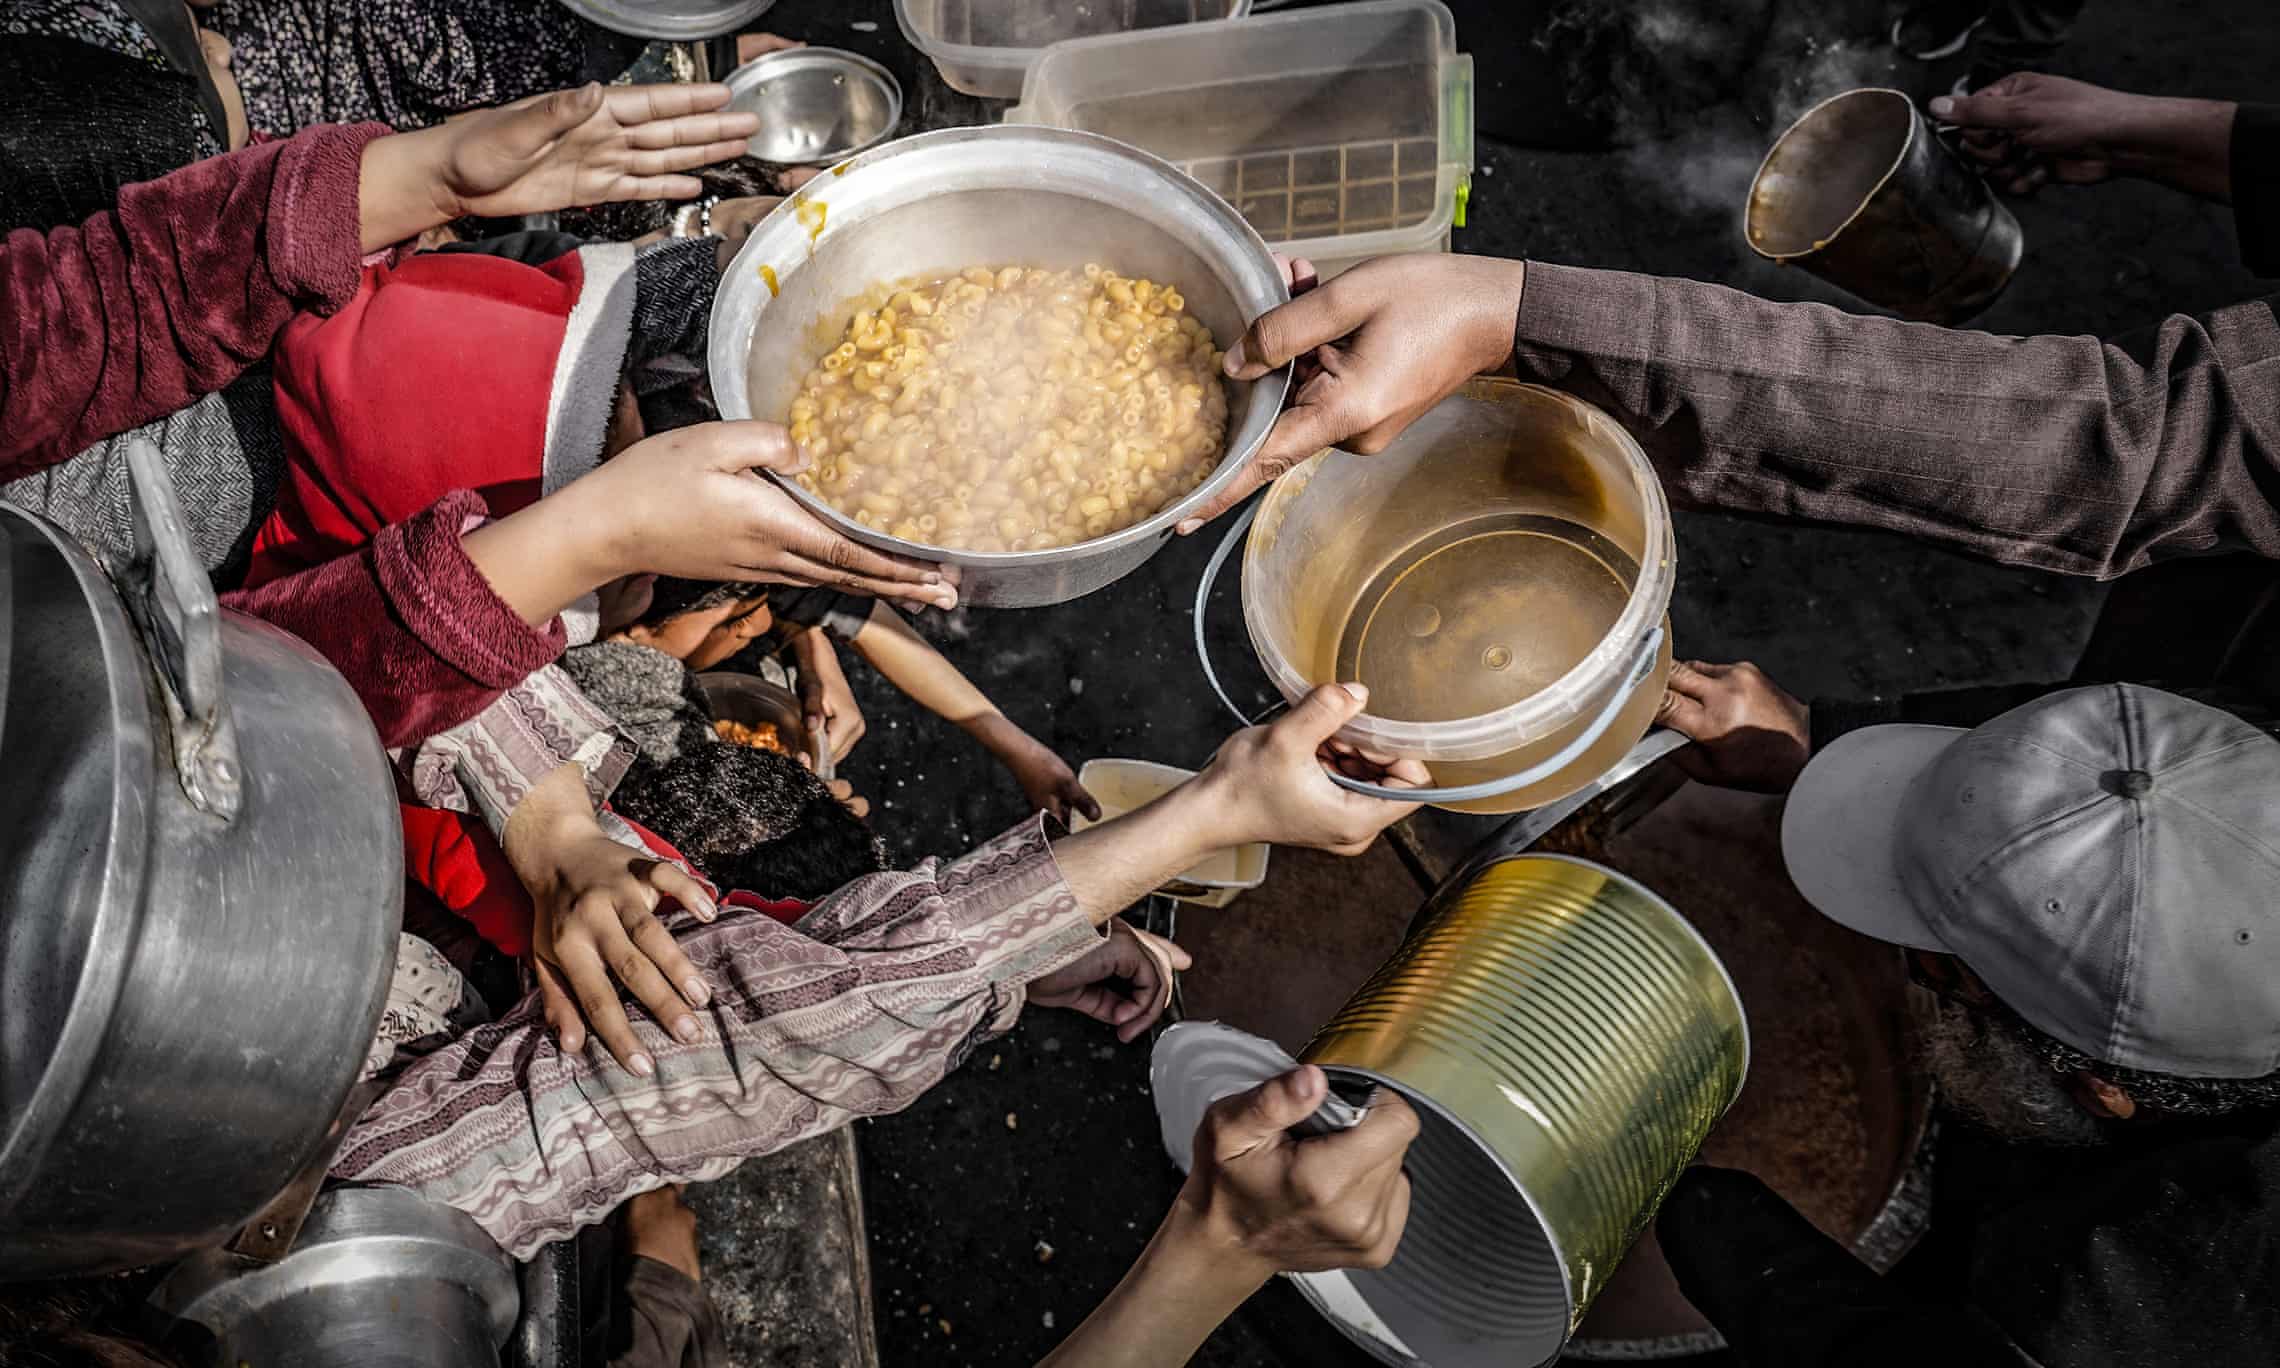 Food for Gazans